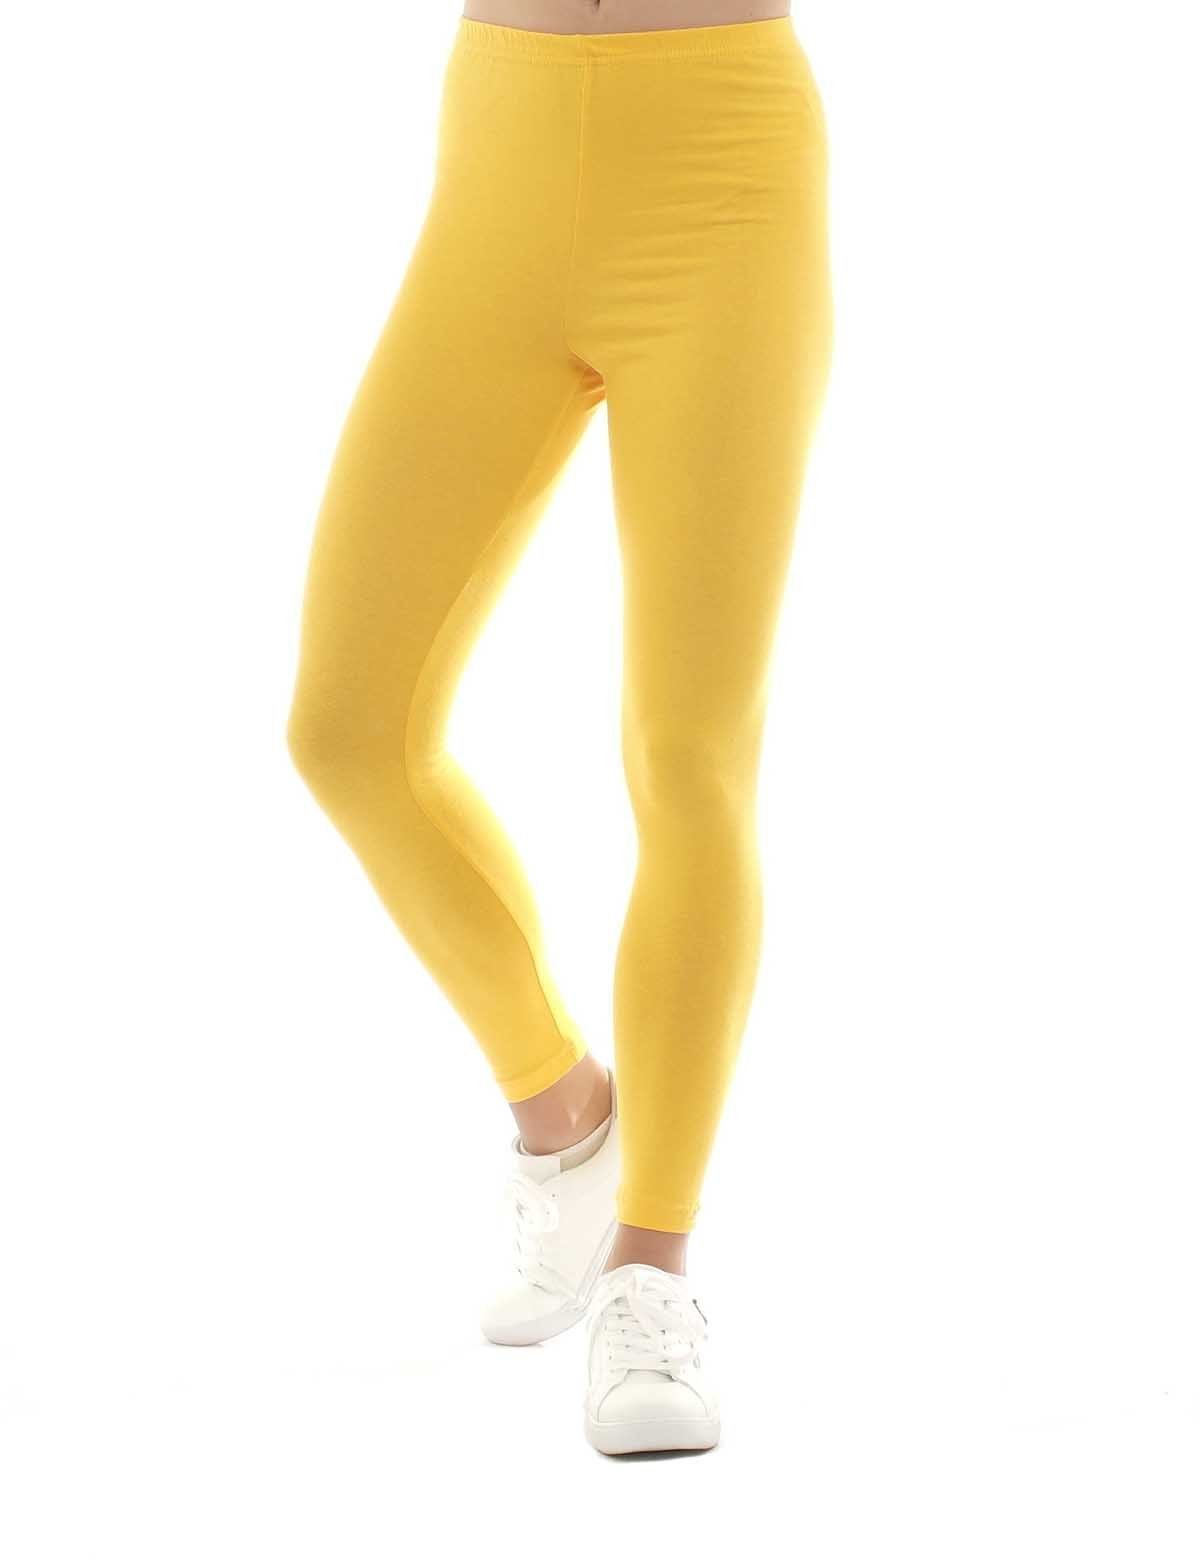 gelb Leggings Damen lang gummi Baumwolle Leggings Hose F&K-Mode